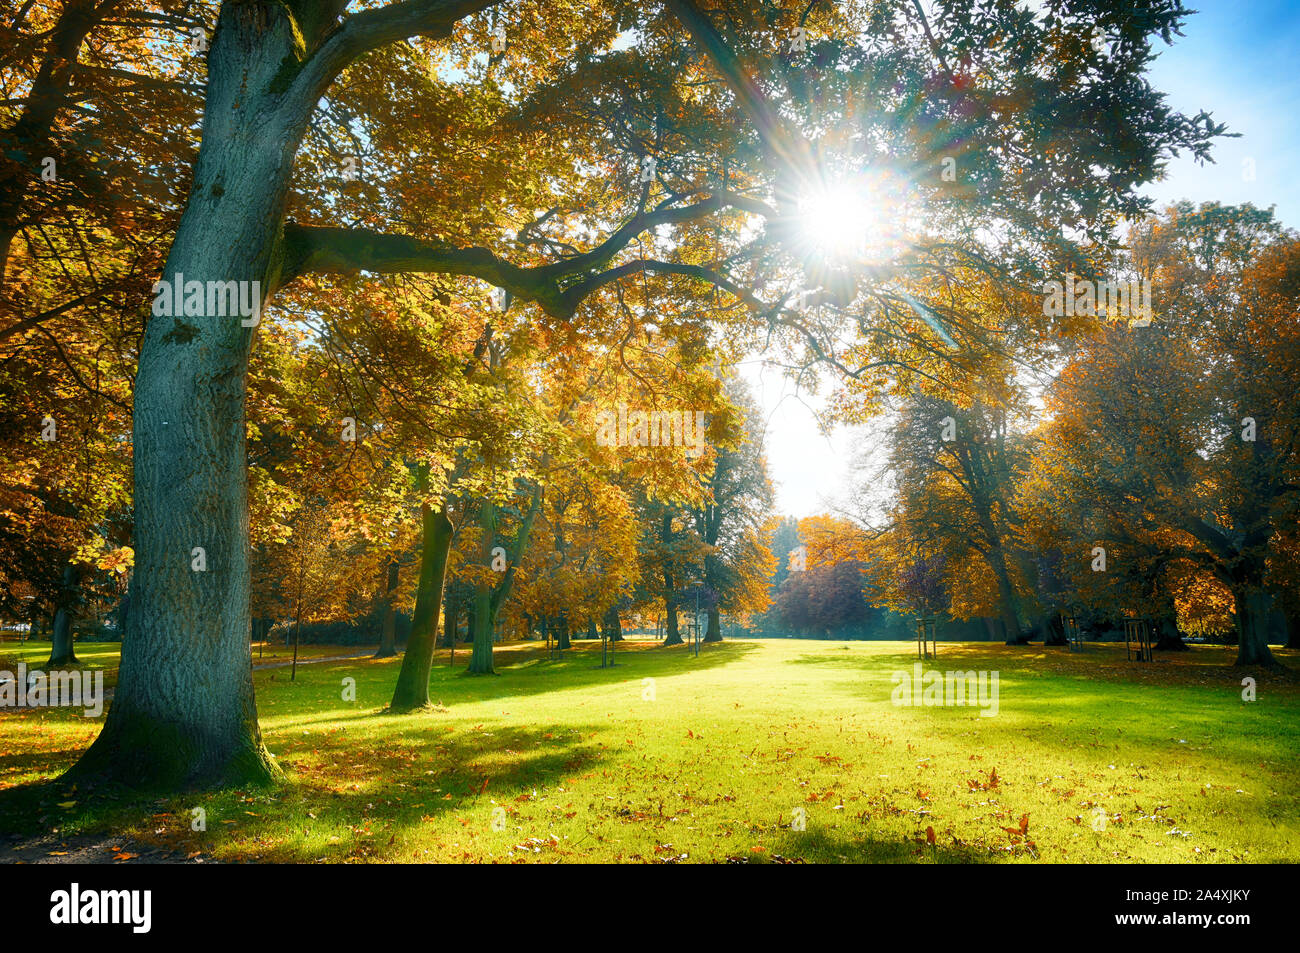 Soleil brille à travers les beaux vieux arbres avec feuilles aux couleurs automnales dans un ancien parc, nature saisonnière de l'arrière-plan Banque D'Images